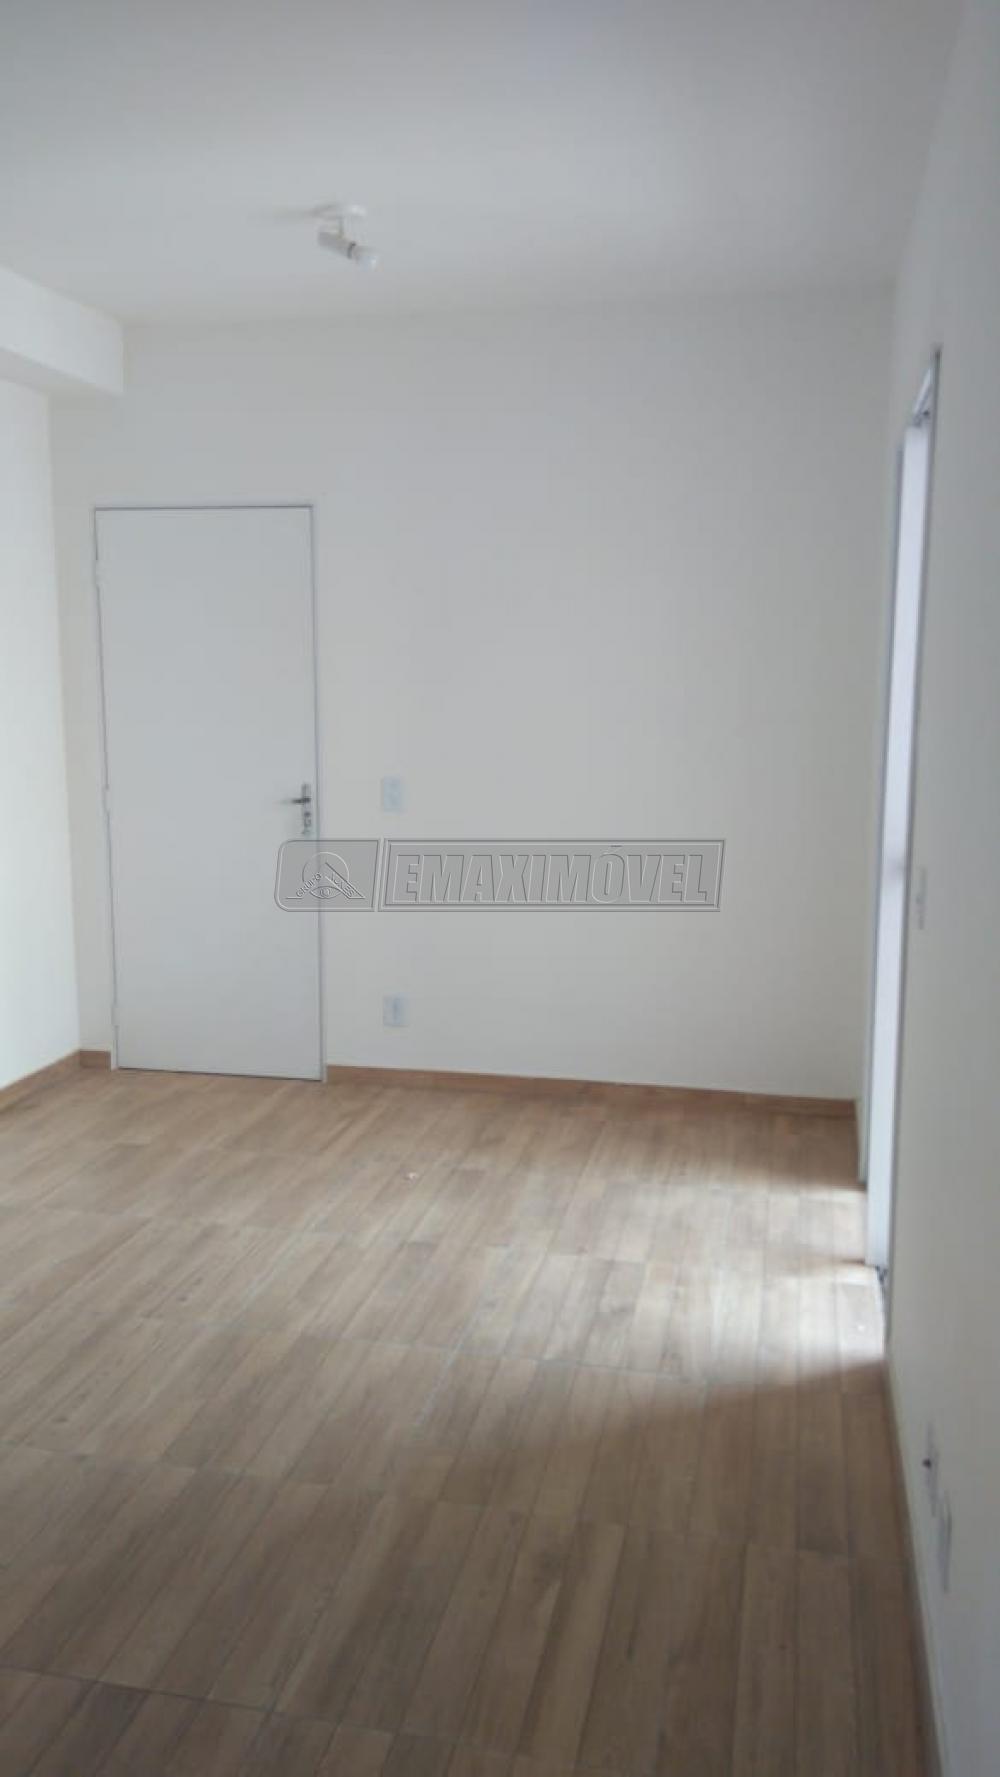 Comprar Apartamento / Padrão em Sorocaba R$ 250.000,00 - Foto 11